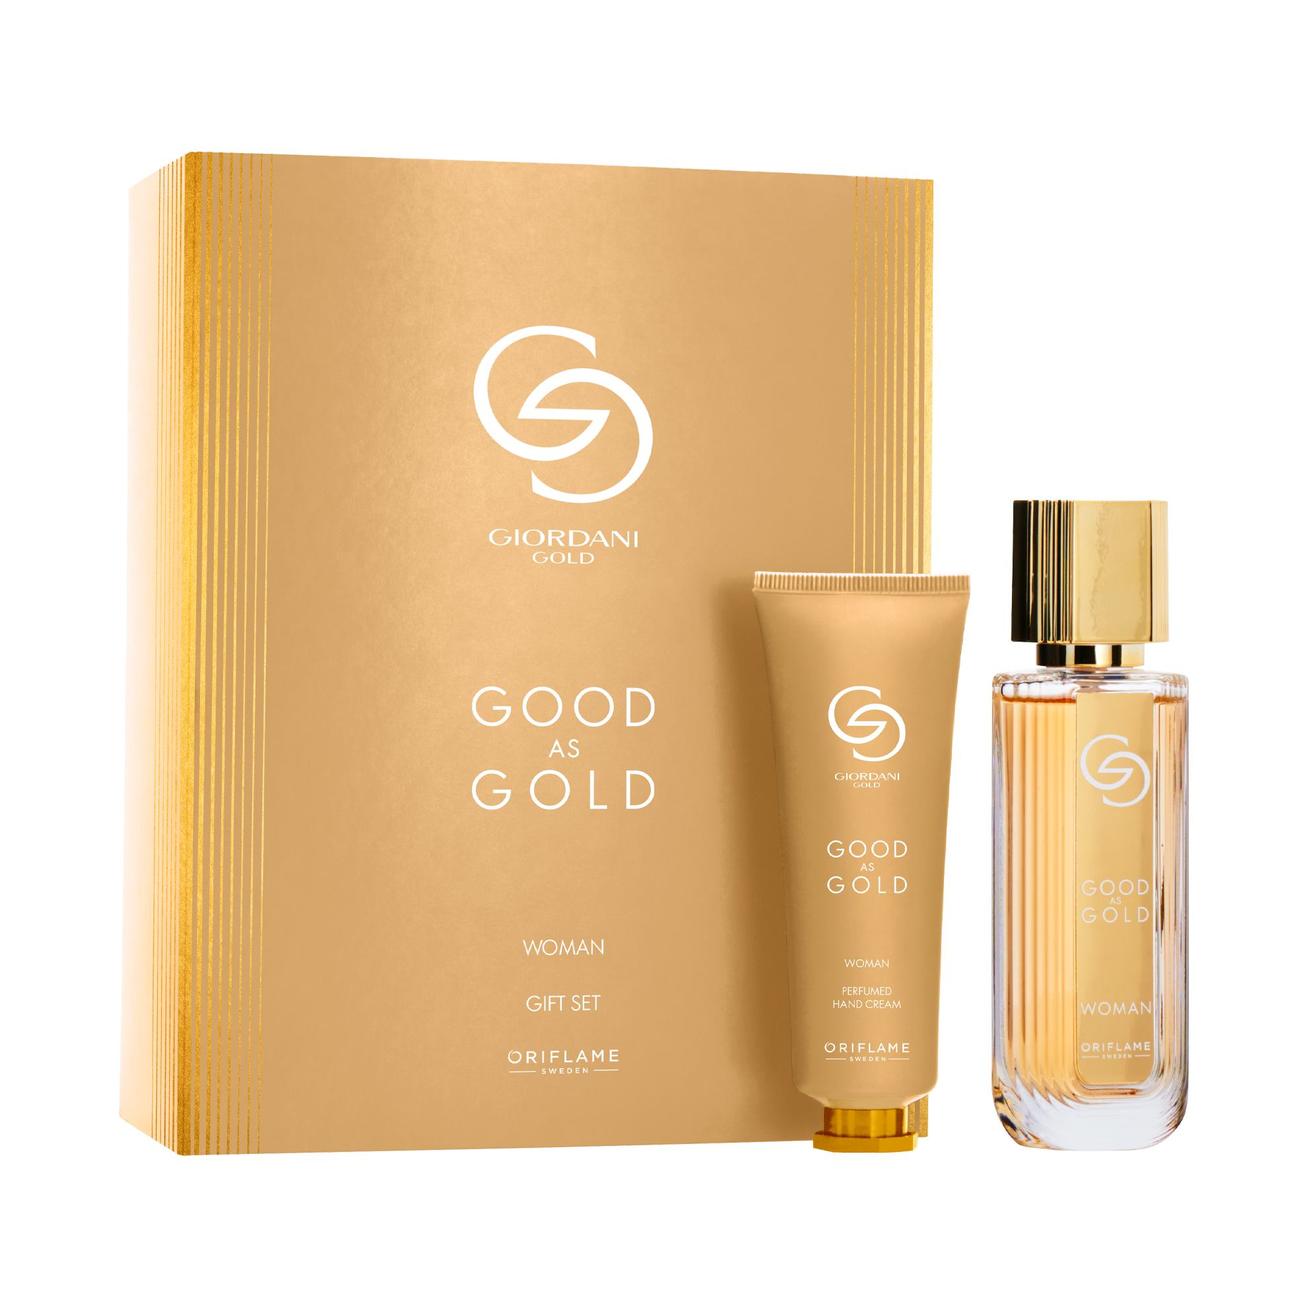 Aanbieding van Good as Gold Woman Gift Set voor 86€ bij Oriflame